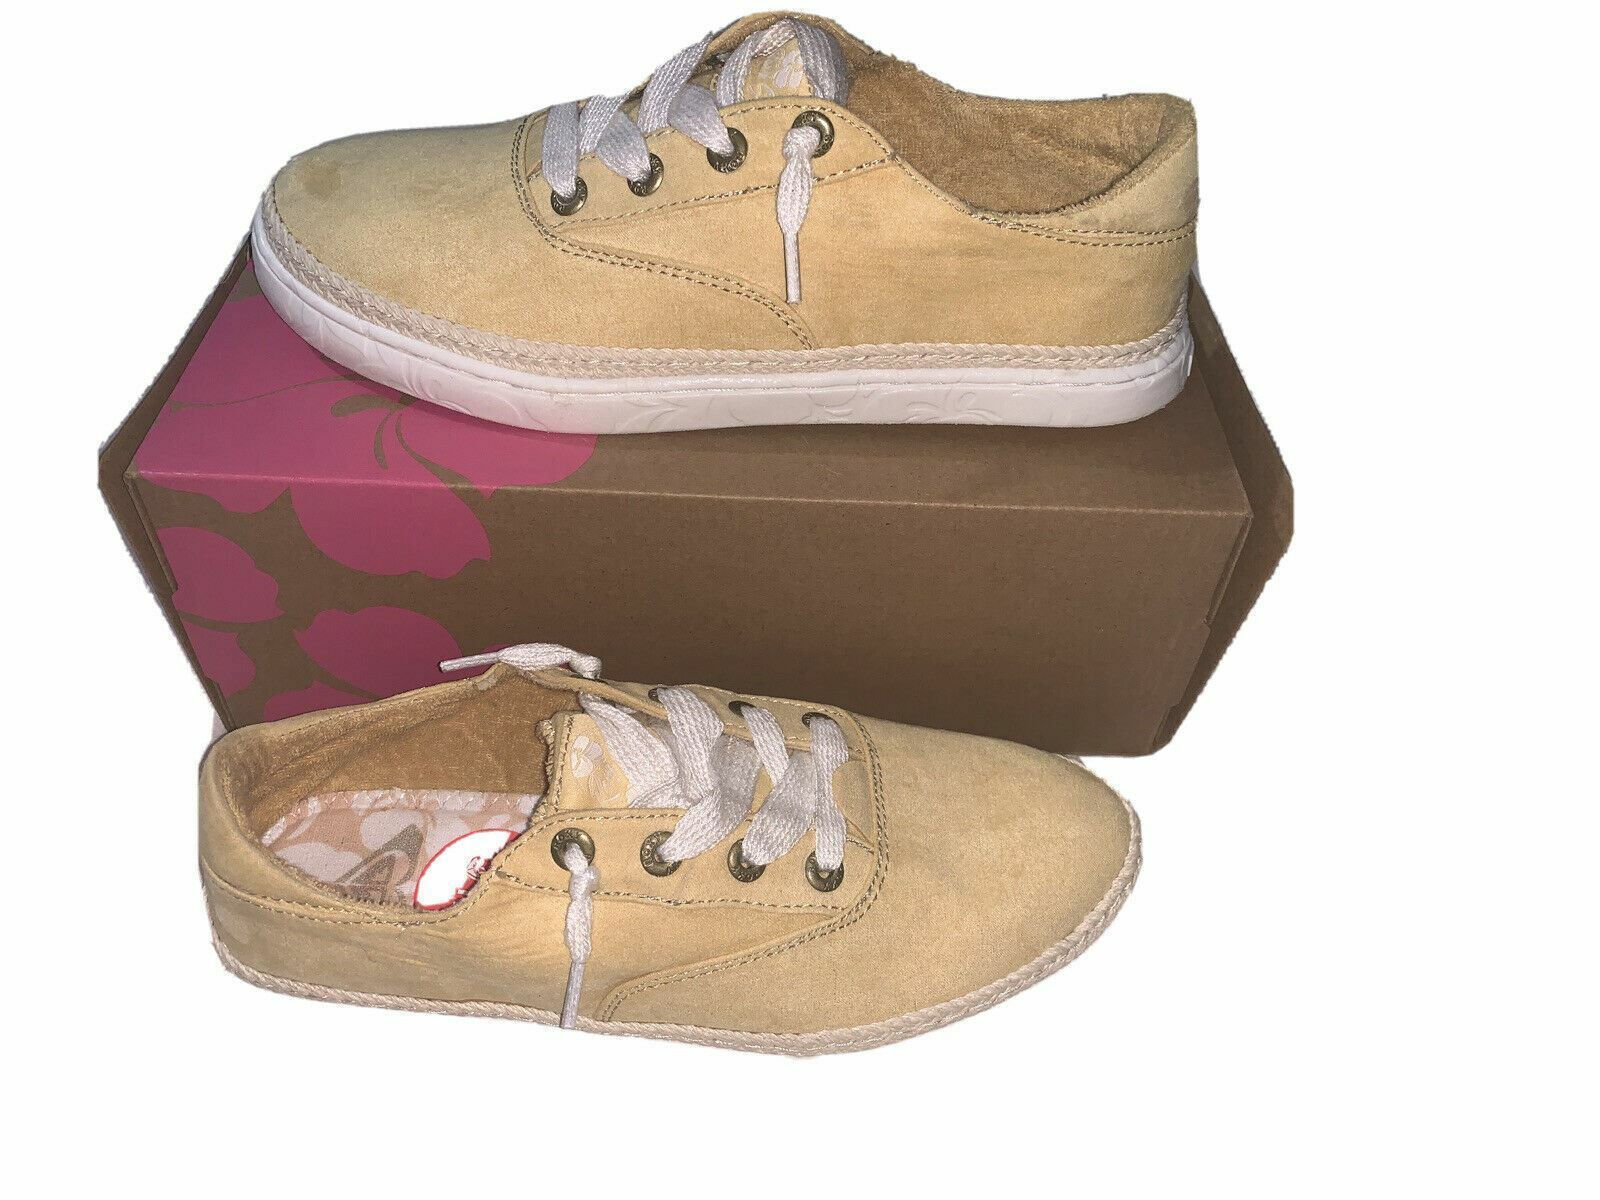 Roxy Talon Yellow Width-B Sneakers Low Top Shoe Soft Sz 7.5 New In box